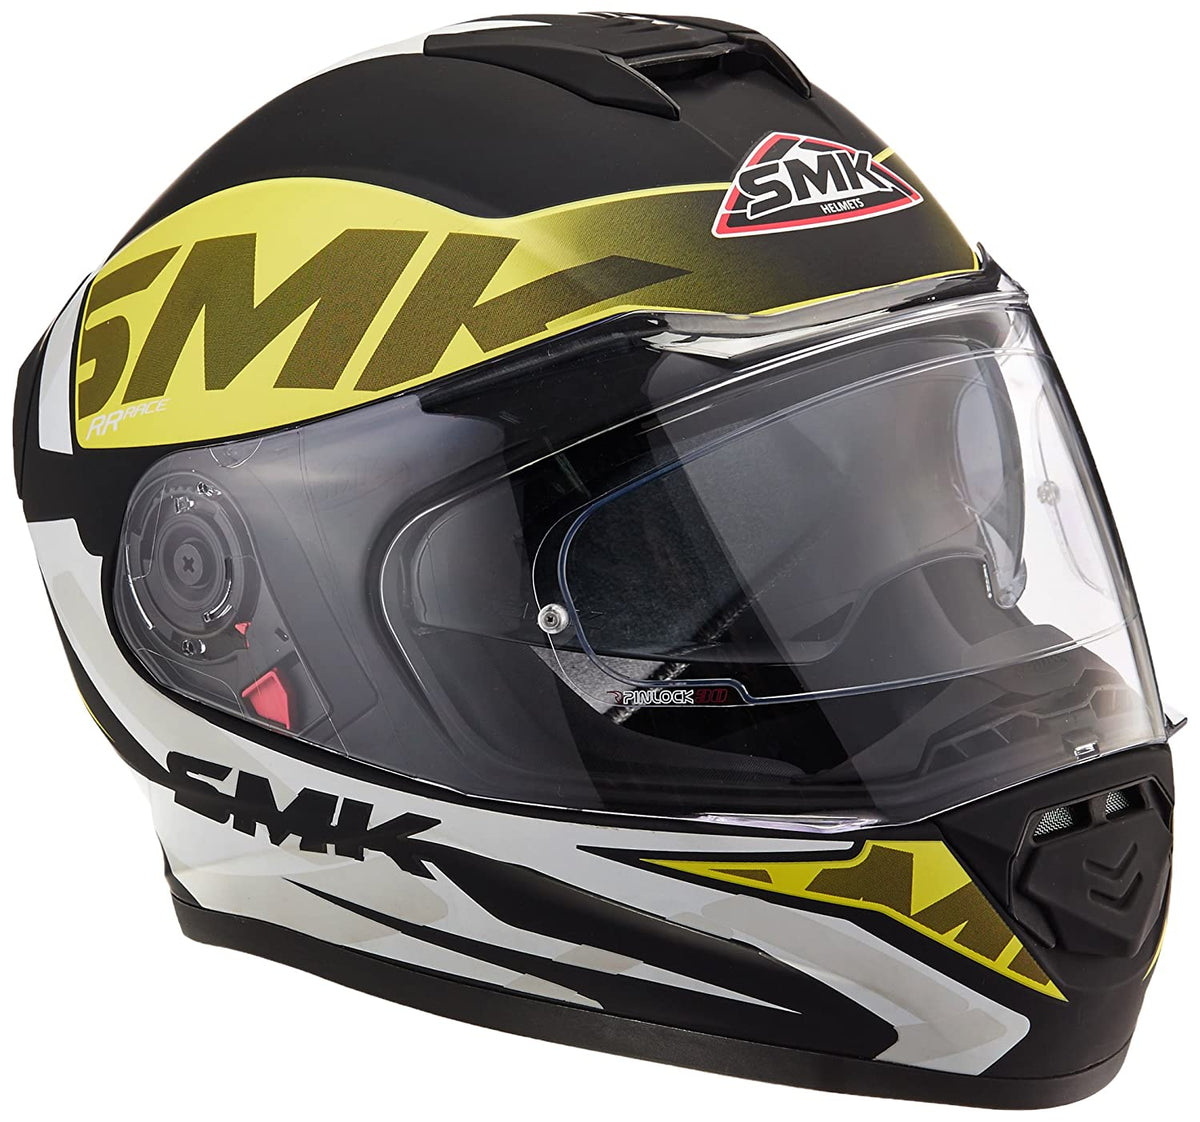 SMK HELMET - Twister Logo Full Face Helmet With Pinlock Fitted Clear Visor (MA241/Matt Black, Fluorescent Yellow and White,) - LRL Motors